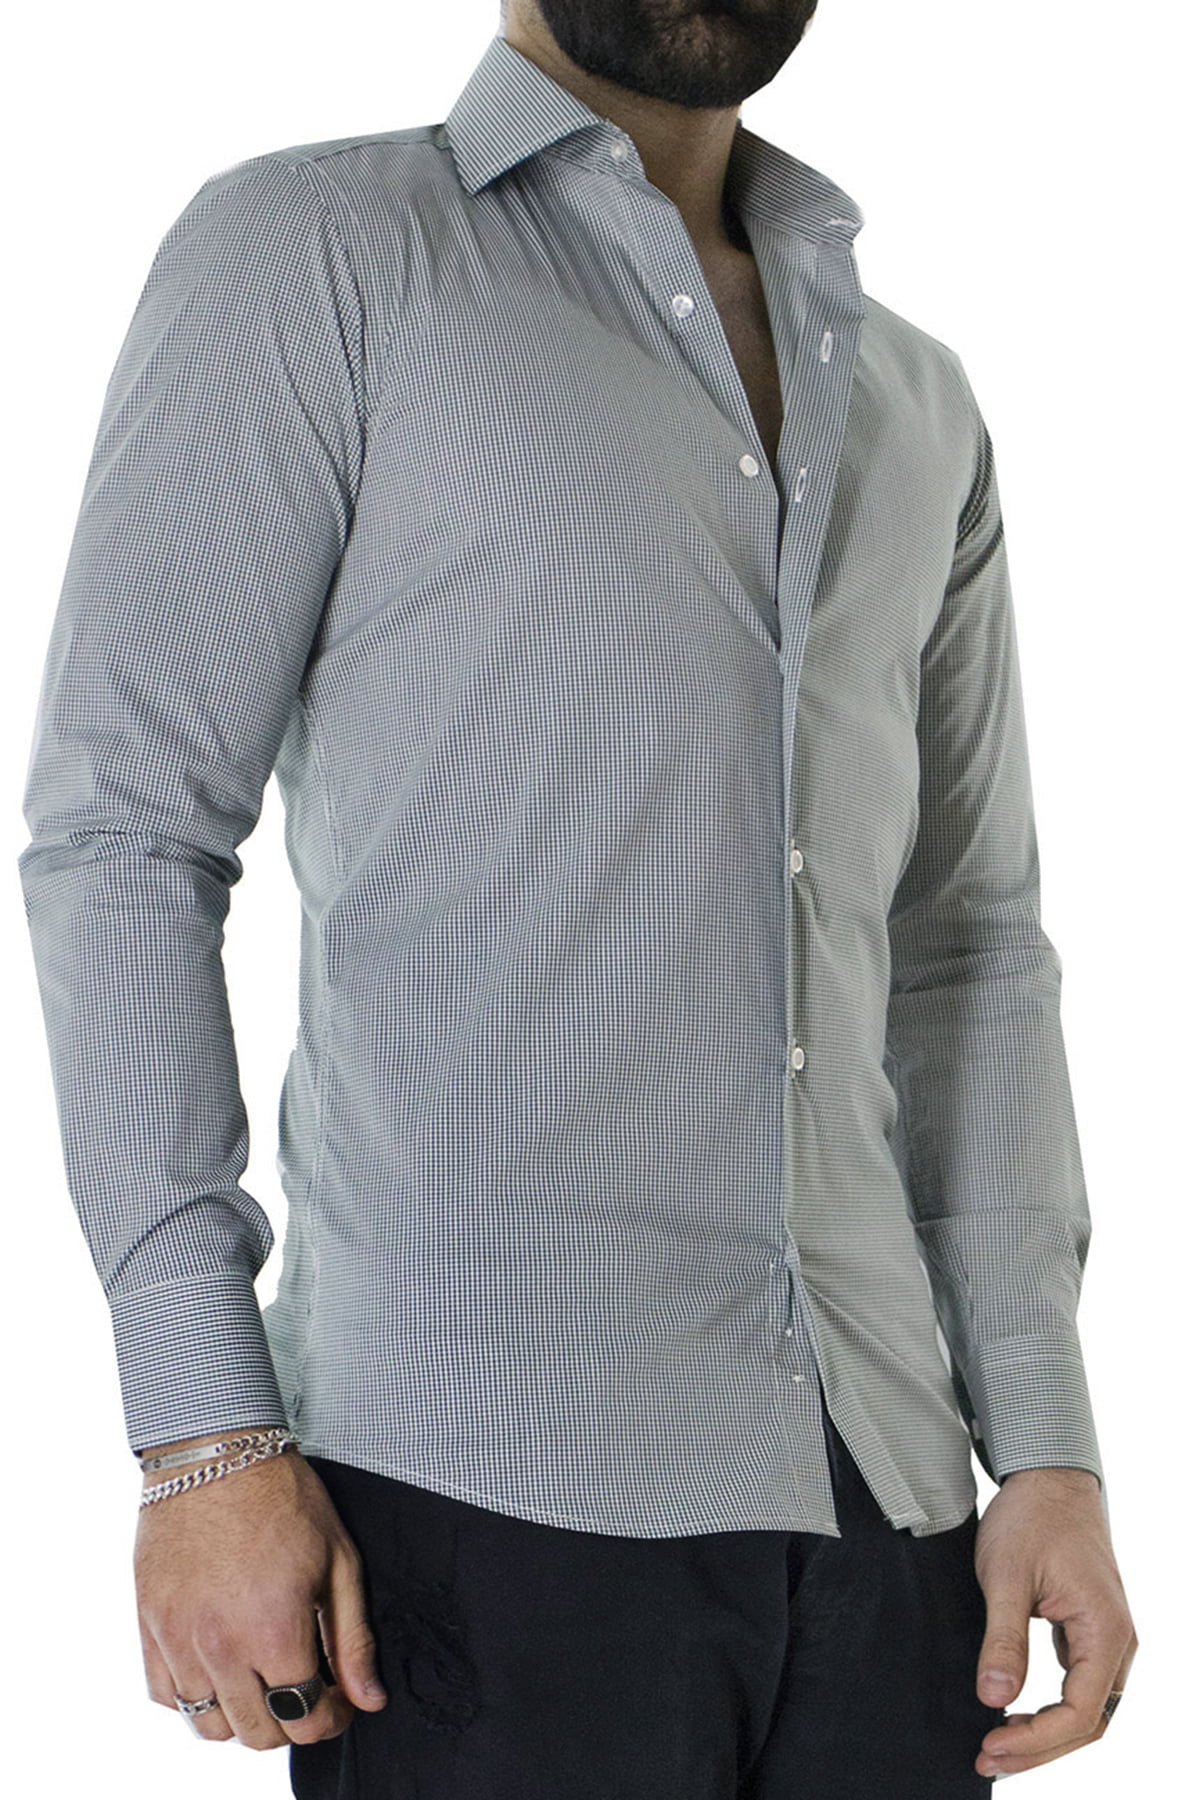 Camicia Uomo microquadro Slim Fit Collo semi francese cotone Elasticizzata casual e elegante